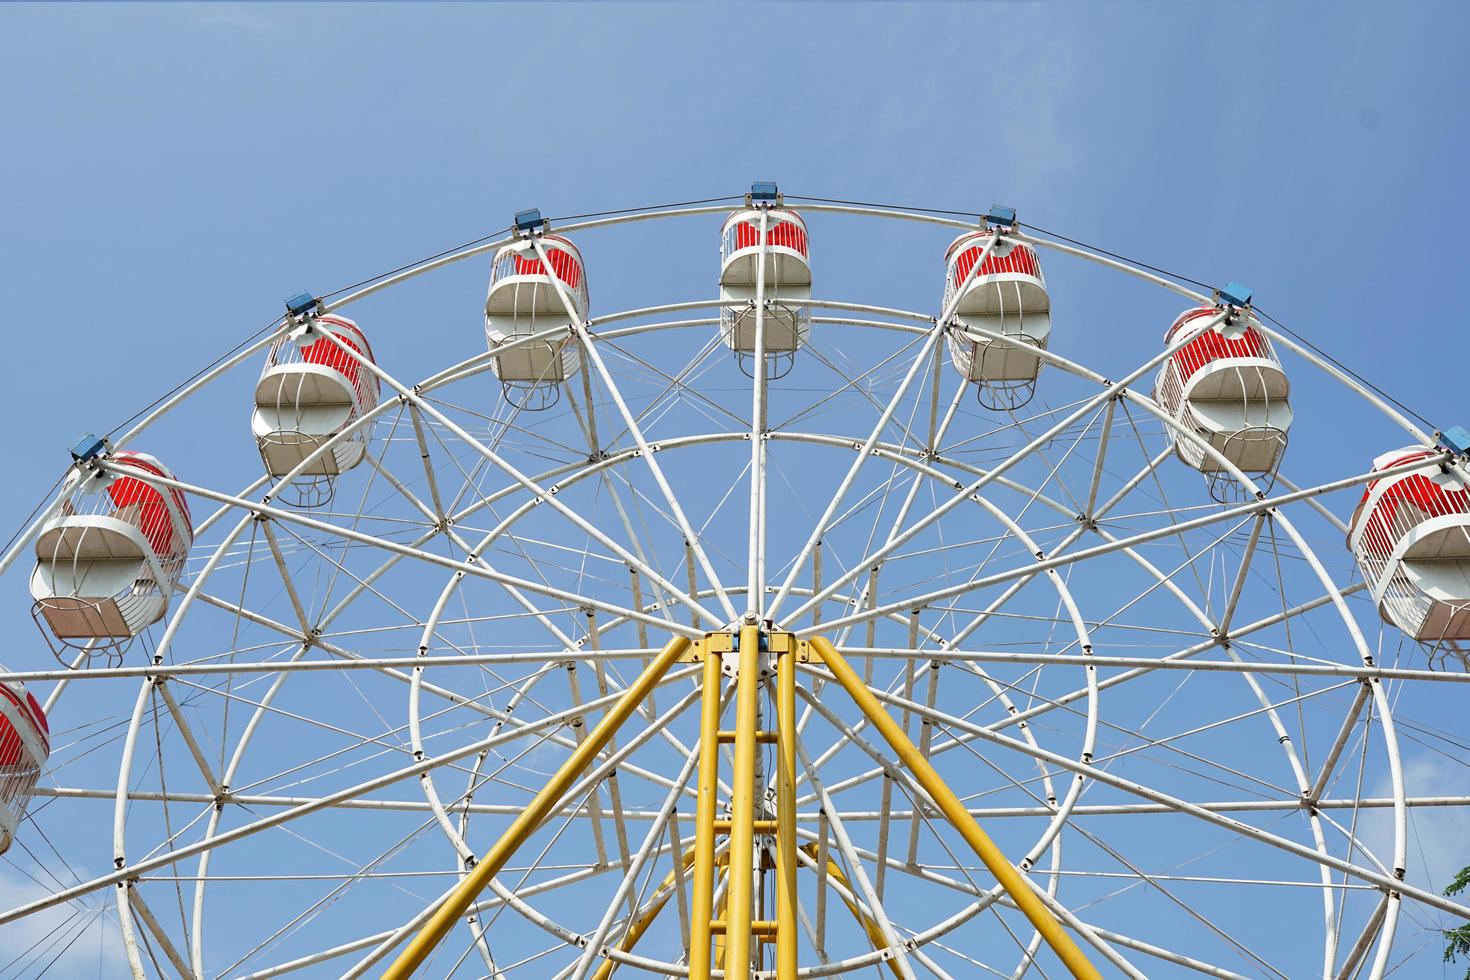 carnaval, grande roue sur ciel bleu dans un parc d'attractions en été photo